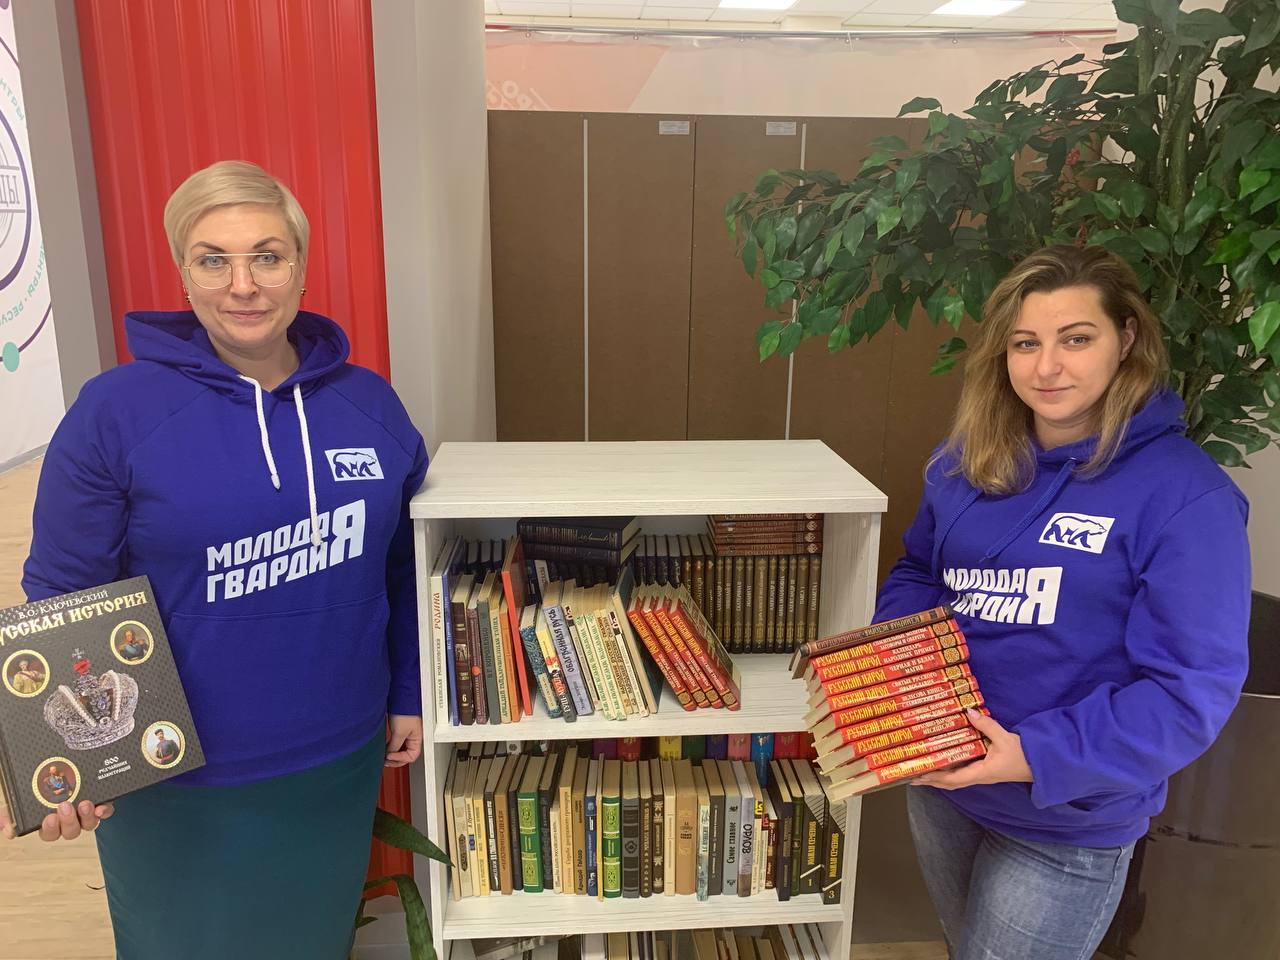 молодгвардейцы мурманской области организовали сбор книг для школьных библиотек лднр, запорожской и херсонской областей картинки мгер